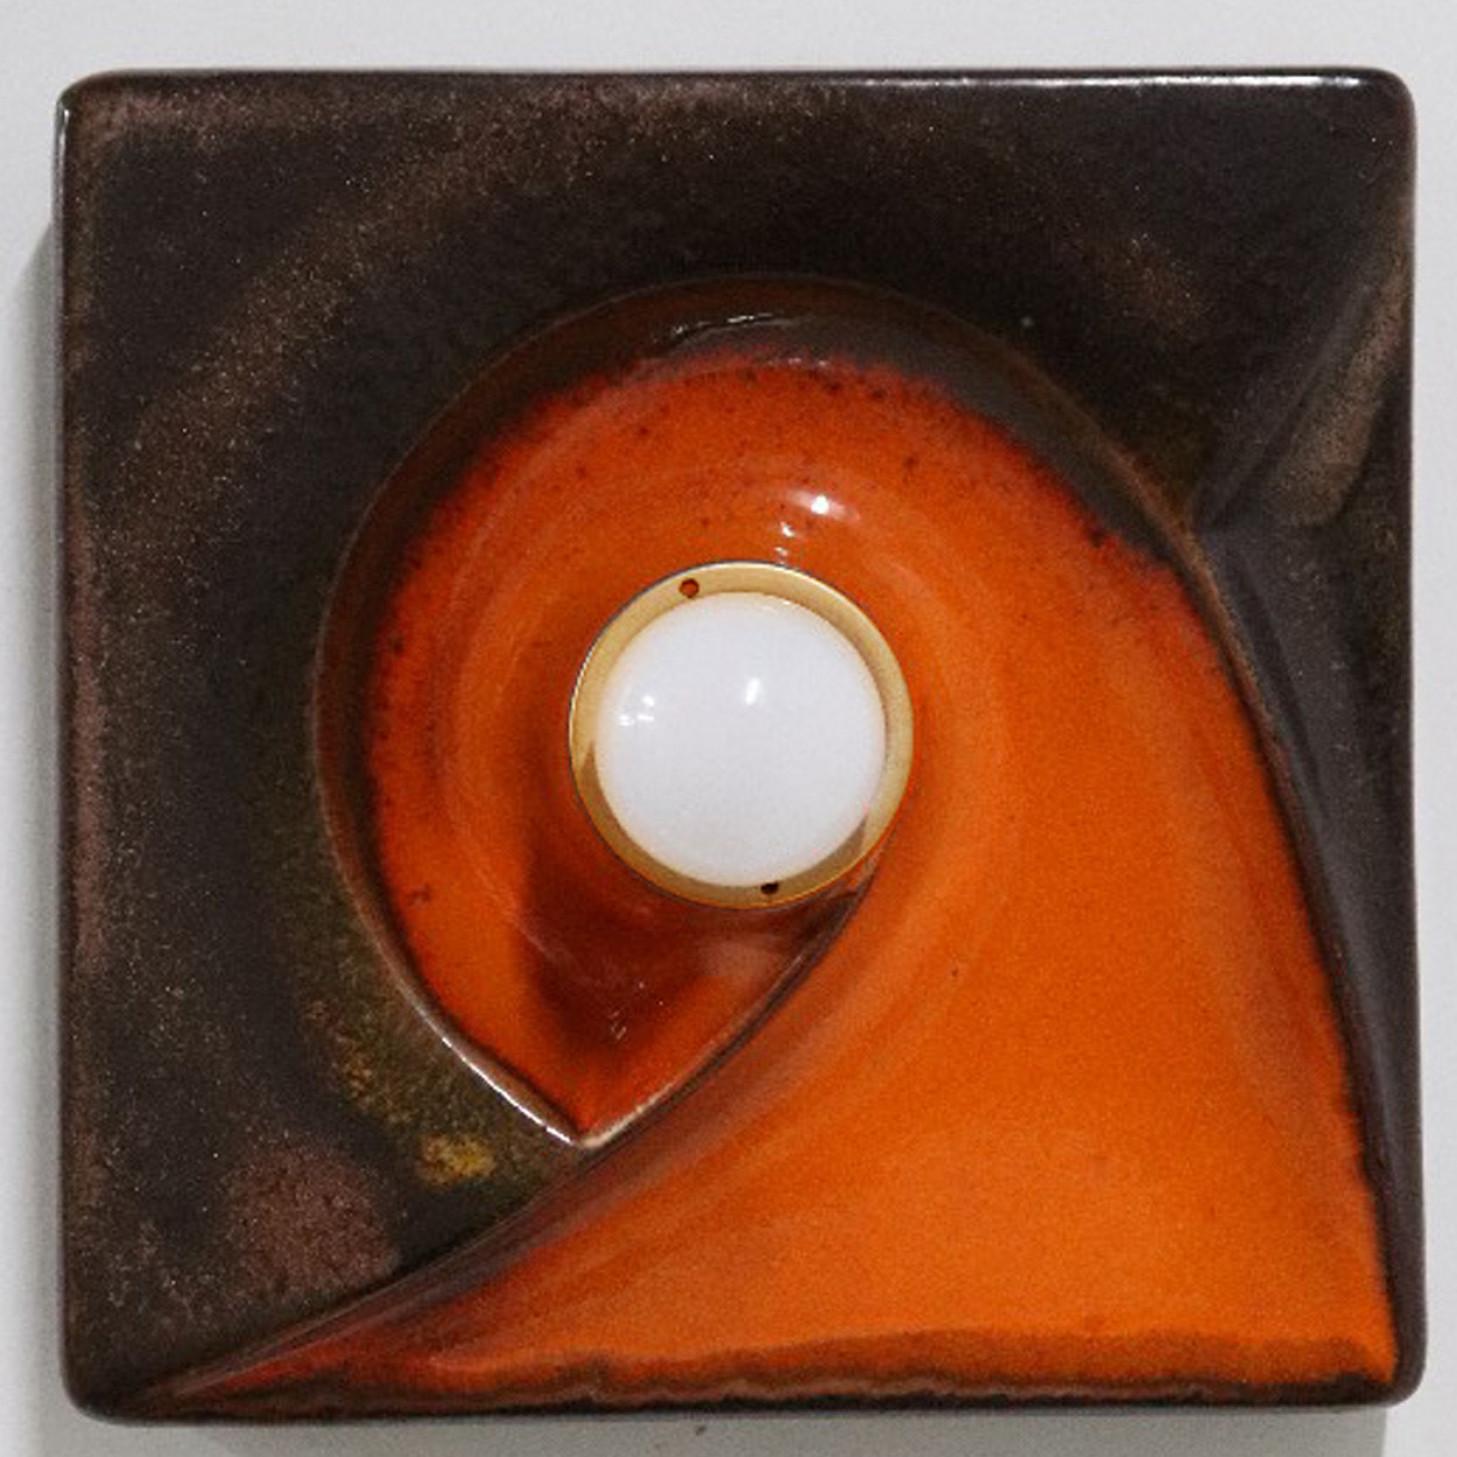 1 des 6 Spectaculaires appliques graphiques émaillées, en céramique brune et sable, fabriquées dans les années 1970 en Allemagne.

Nous avons utilisé des ampoules blanches (voir images), mais le miroir argenté, l'or doux/l'ambre ou le fumé sont